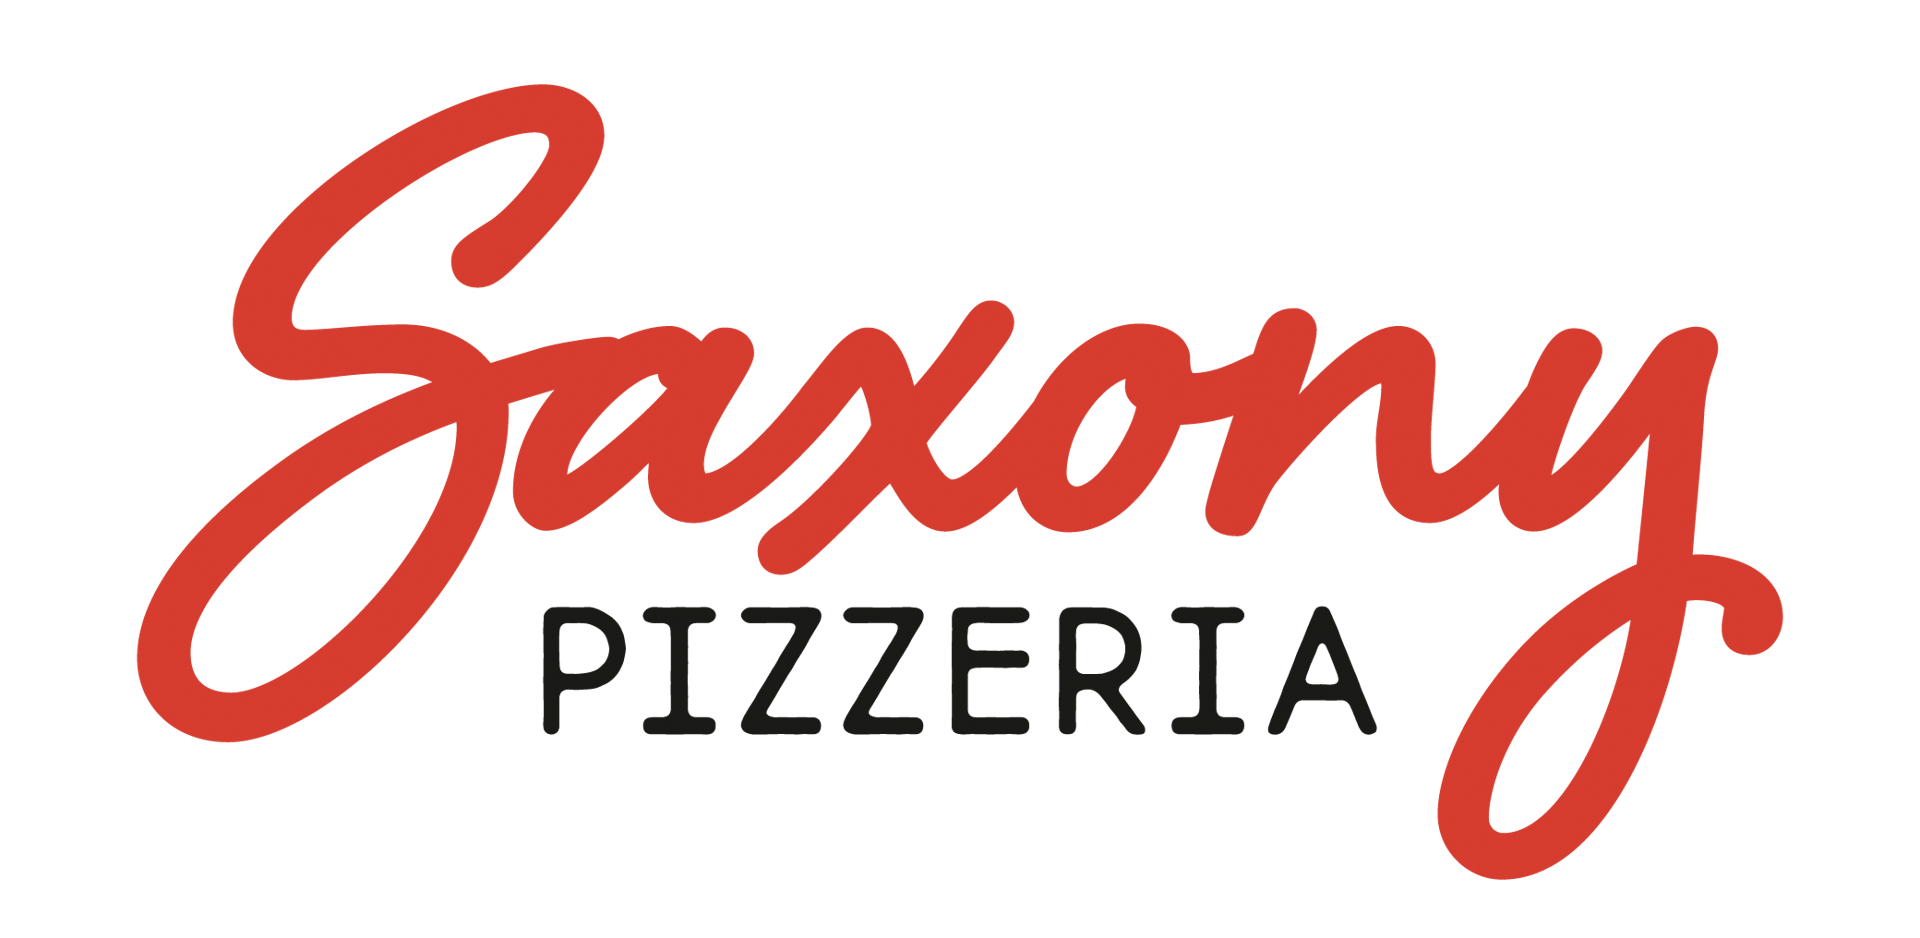 Saxony Pizzeria